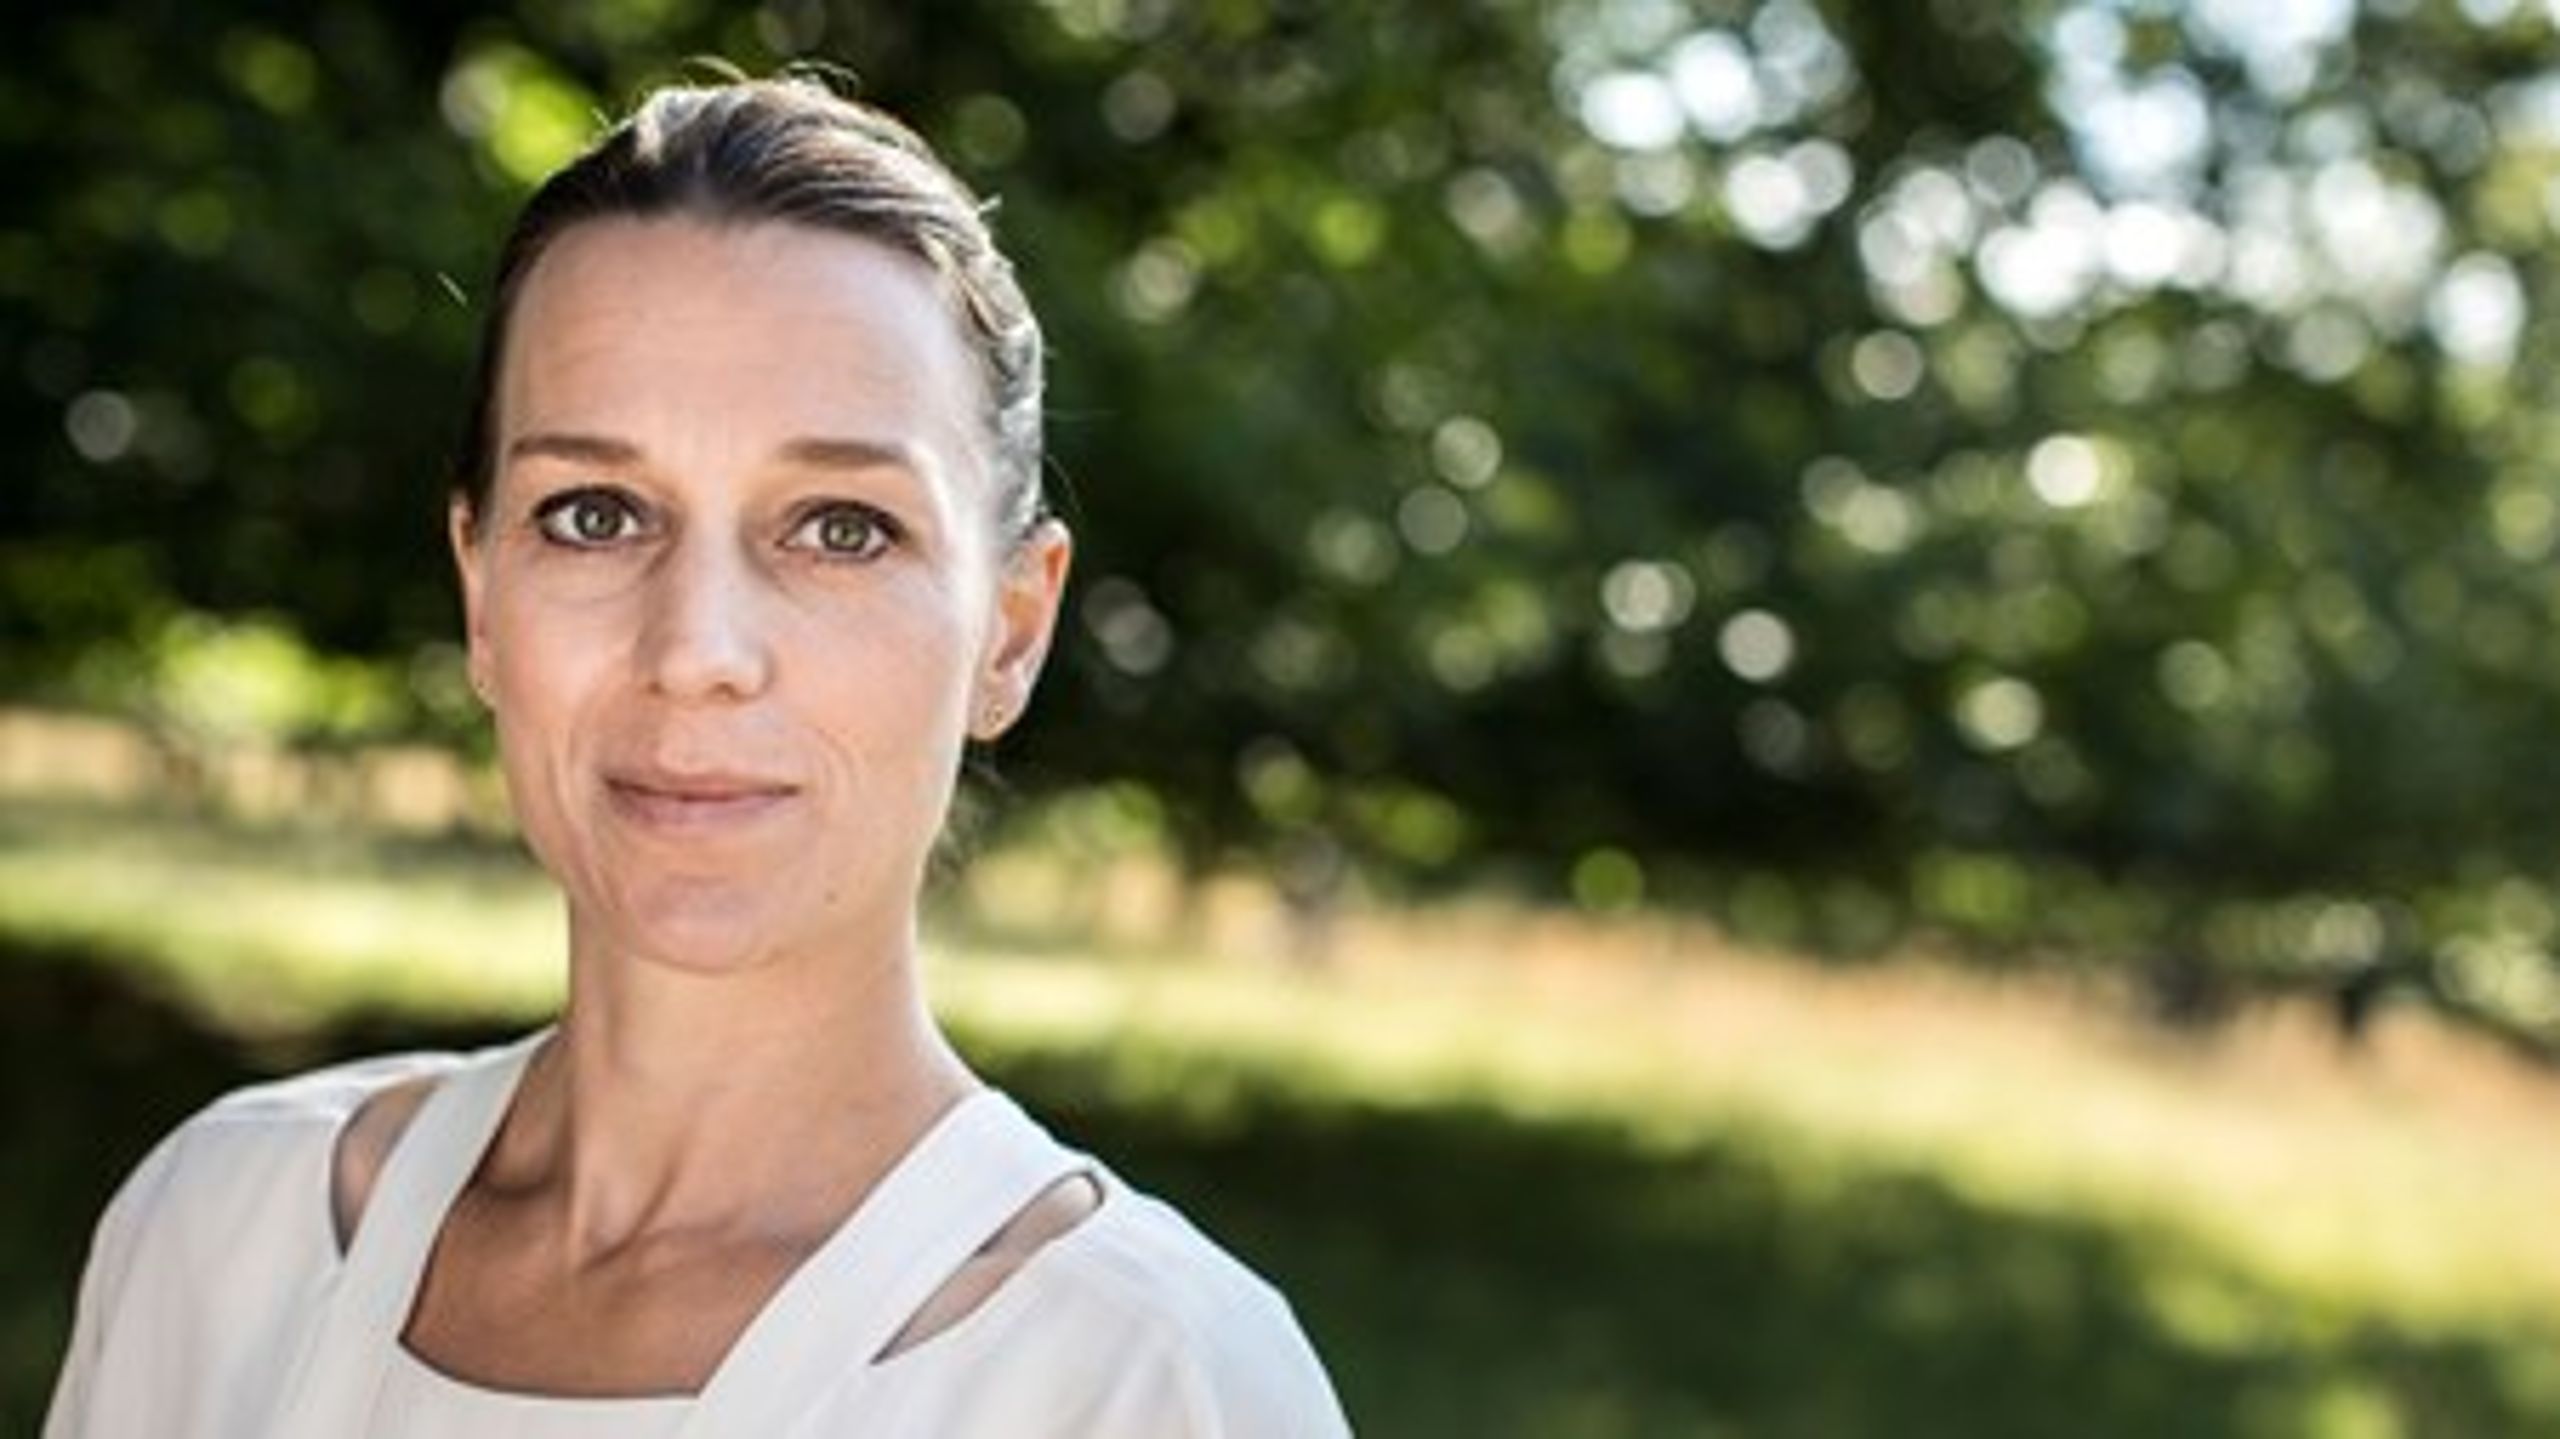 Miljøminister Kirsten Brosbøl (S) lancerede torsdag den nye nationale friluftspolitik.<br>